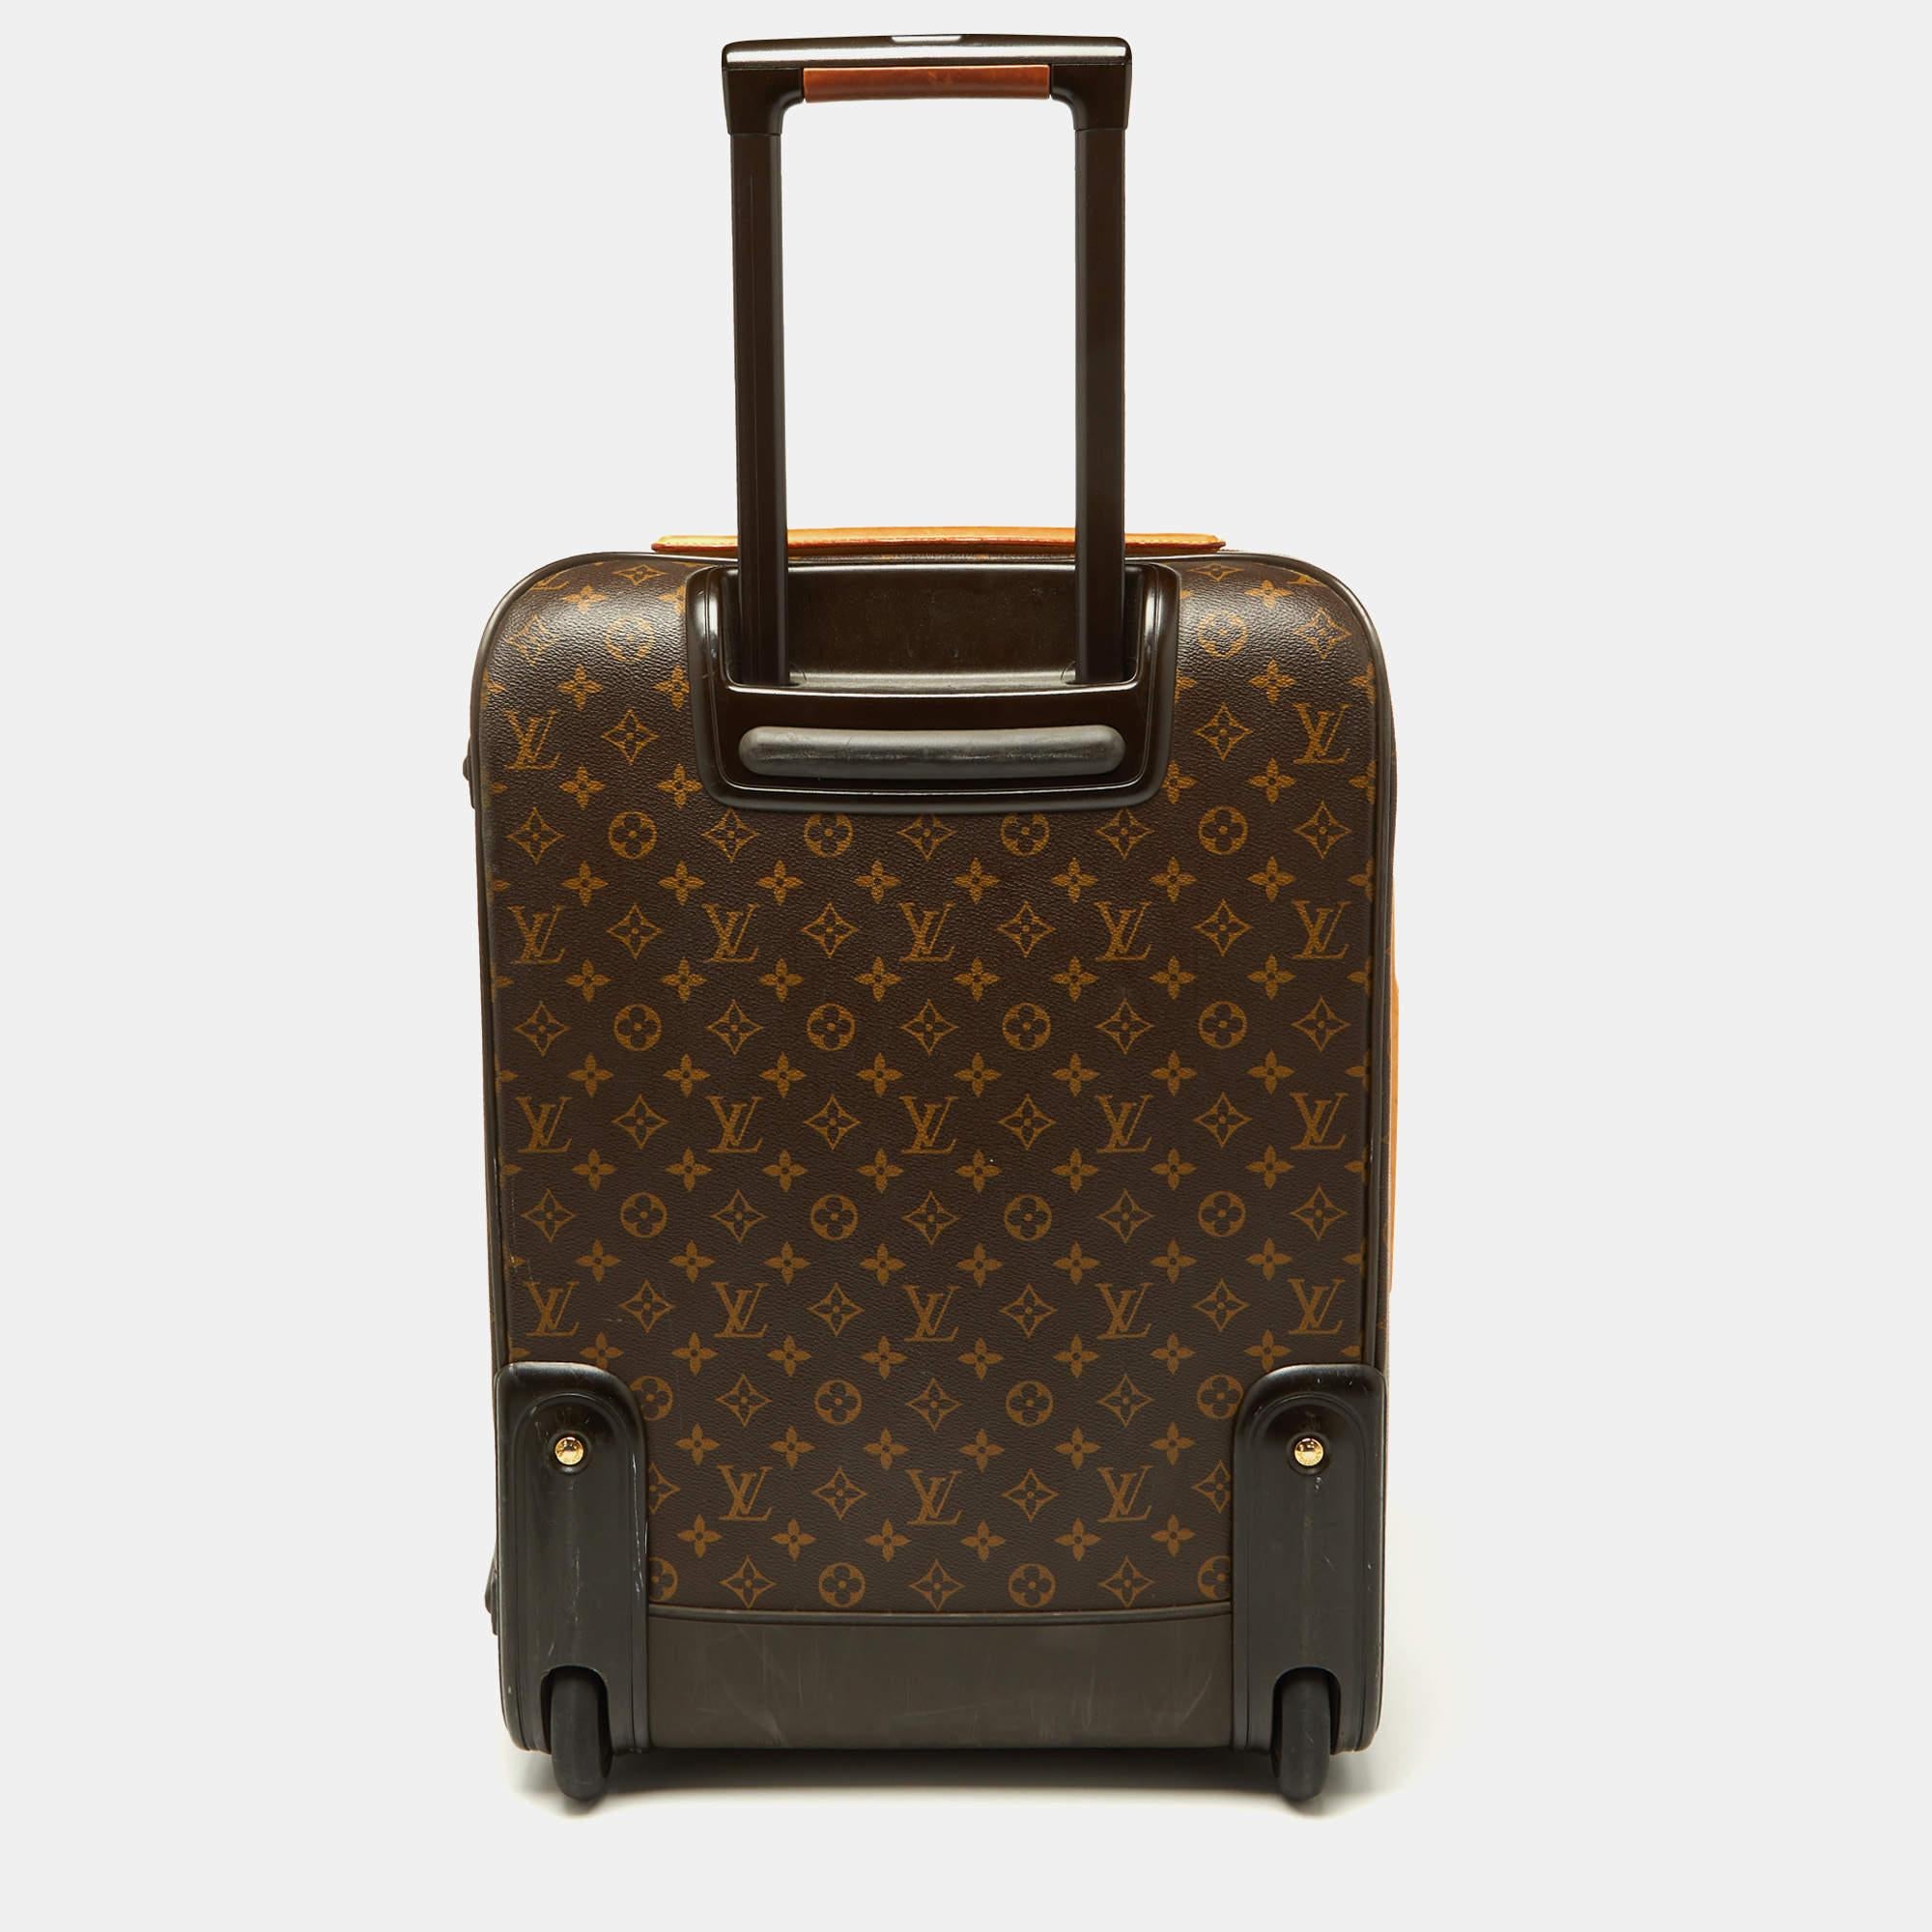 Der Business Pegase Legere 55 Koffer aus Monogram Canvas und Leder führt die legendäre Reisekunst von Louis Vuitton auf elegante Weise fort und besticht durch traditionelle Handwerkskunst und ein innovatives, modernes Design. Leicht, robust und